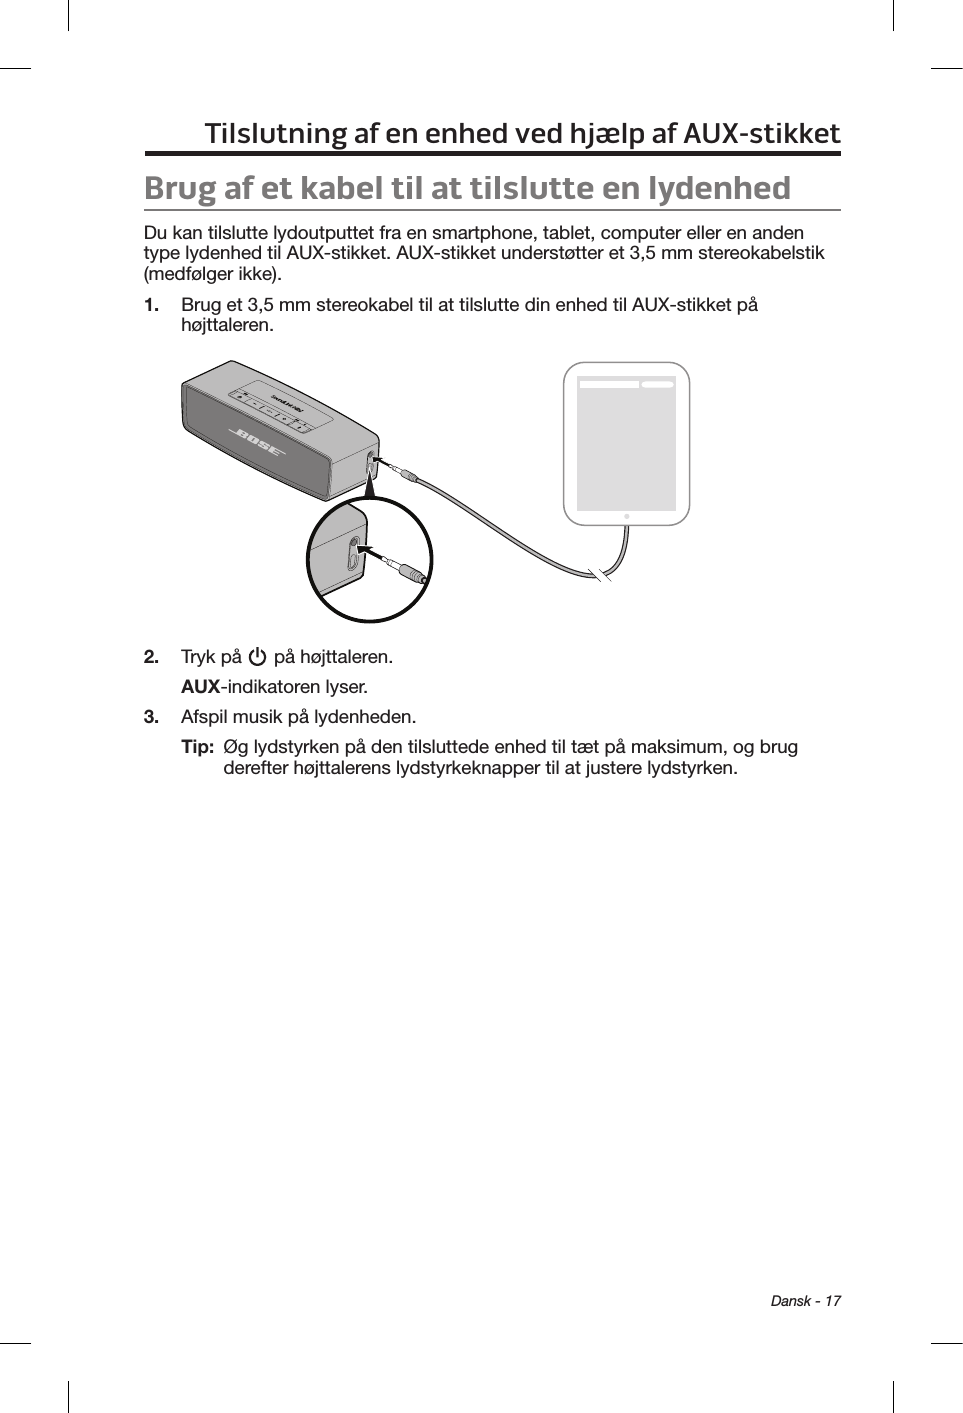  Dansk - 17Tilslutning af en enhed ved hjælp af AUX-stikketBrug af et kabel til at tilslutte en lydenhedDu kan tilslutte lydoutputtet fra en smartphone, tablet, computer eller en anden type lydenhed til AUX-stikket. AUX-stikket understøtter et 3,5 mm stereokabelstik (medfølger ikke).1.  Brug et 3,5 mm stereokabel til at tilslutte din enhed til AUX-stikket på højttaleren.2.  Tryk på   på højttaleren.AUX-indikatoren lyser.3.  Afspil musik på lydenheden.Tip:   Øg lydstyrken på den tilsluttede enhed til tæt på maksimum, og brug derefter højttalerens lydstyrkeknapper til at justere lydstyrken.